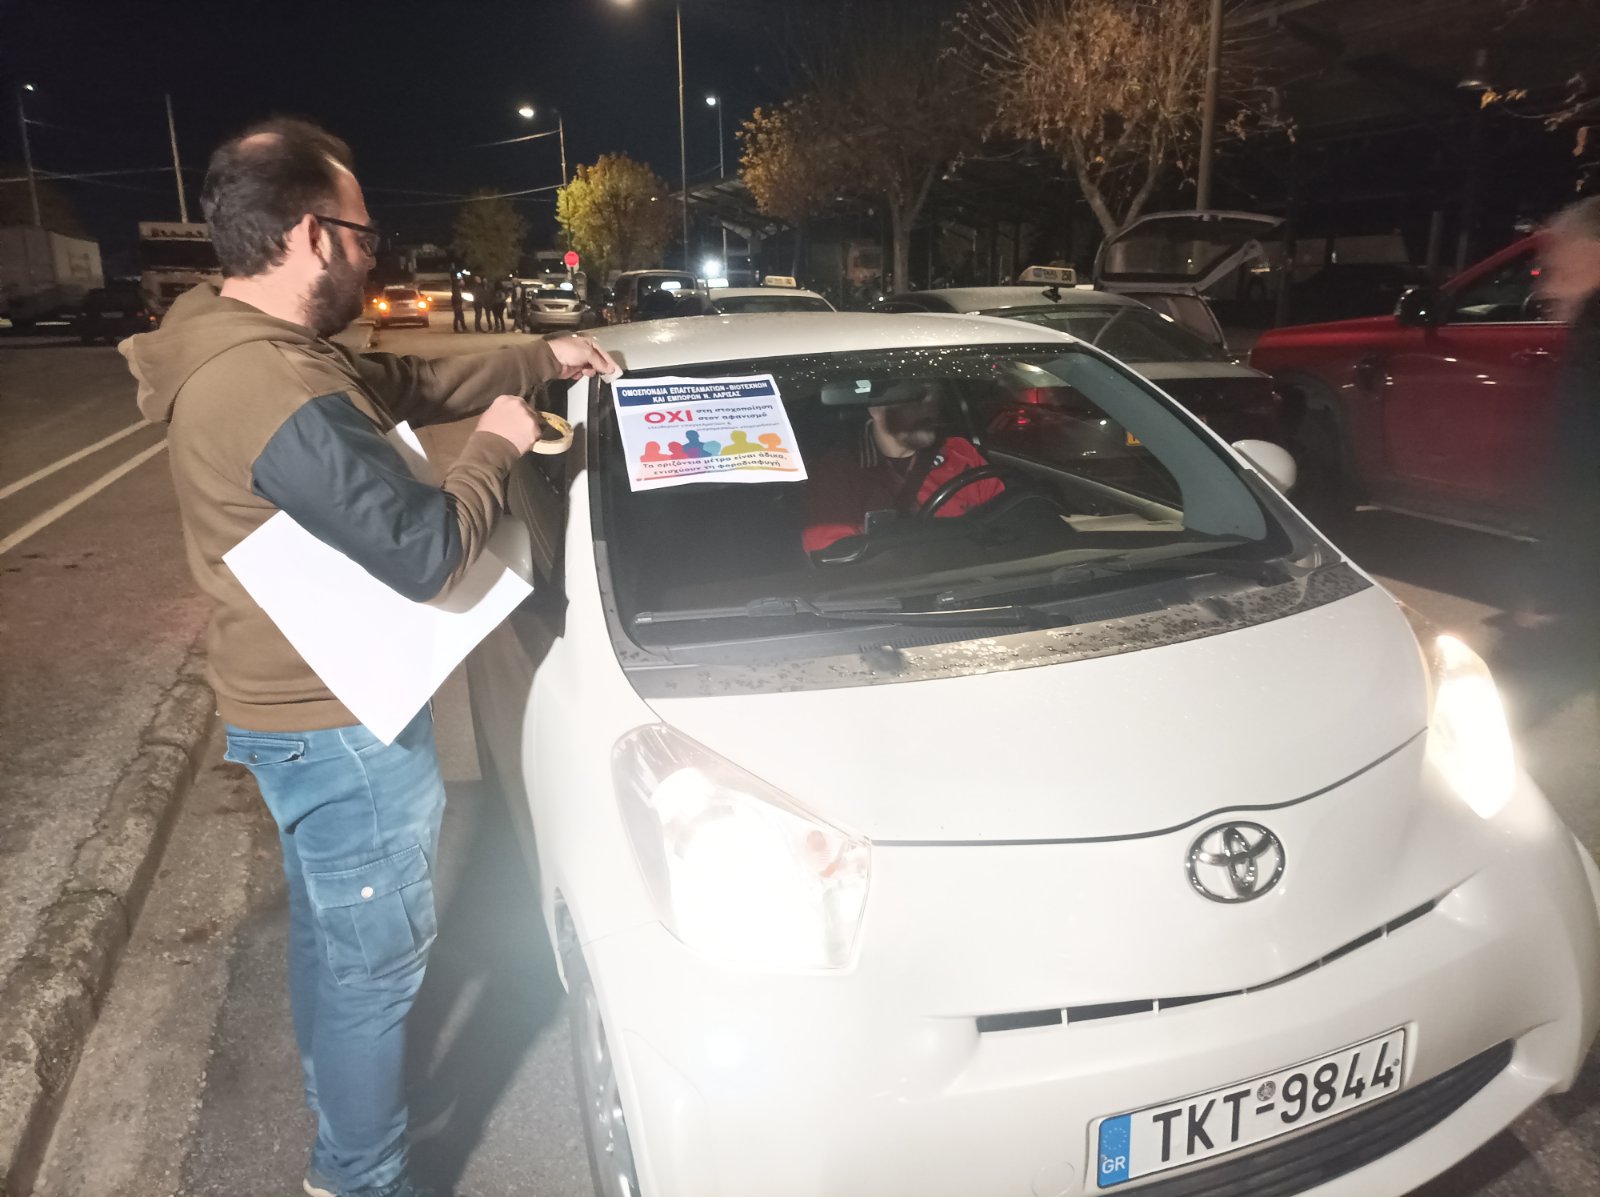 Ιδιοκτήτες ταξί Λάρισας: Θα κλιμακώσουμε τις κινητοποιήσεις μέχρι να αποσυρθεί το φορολογικό “έκτρωμα”